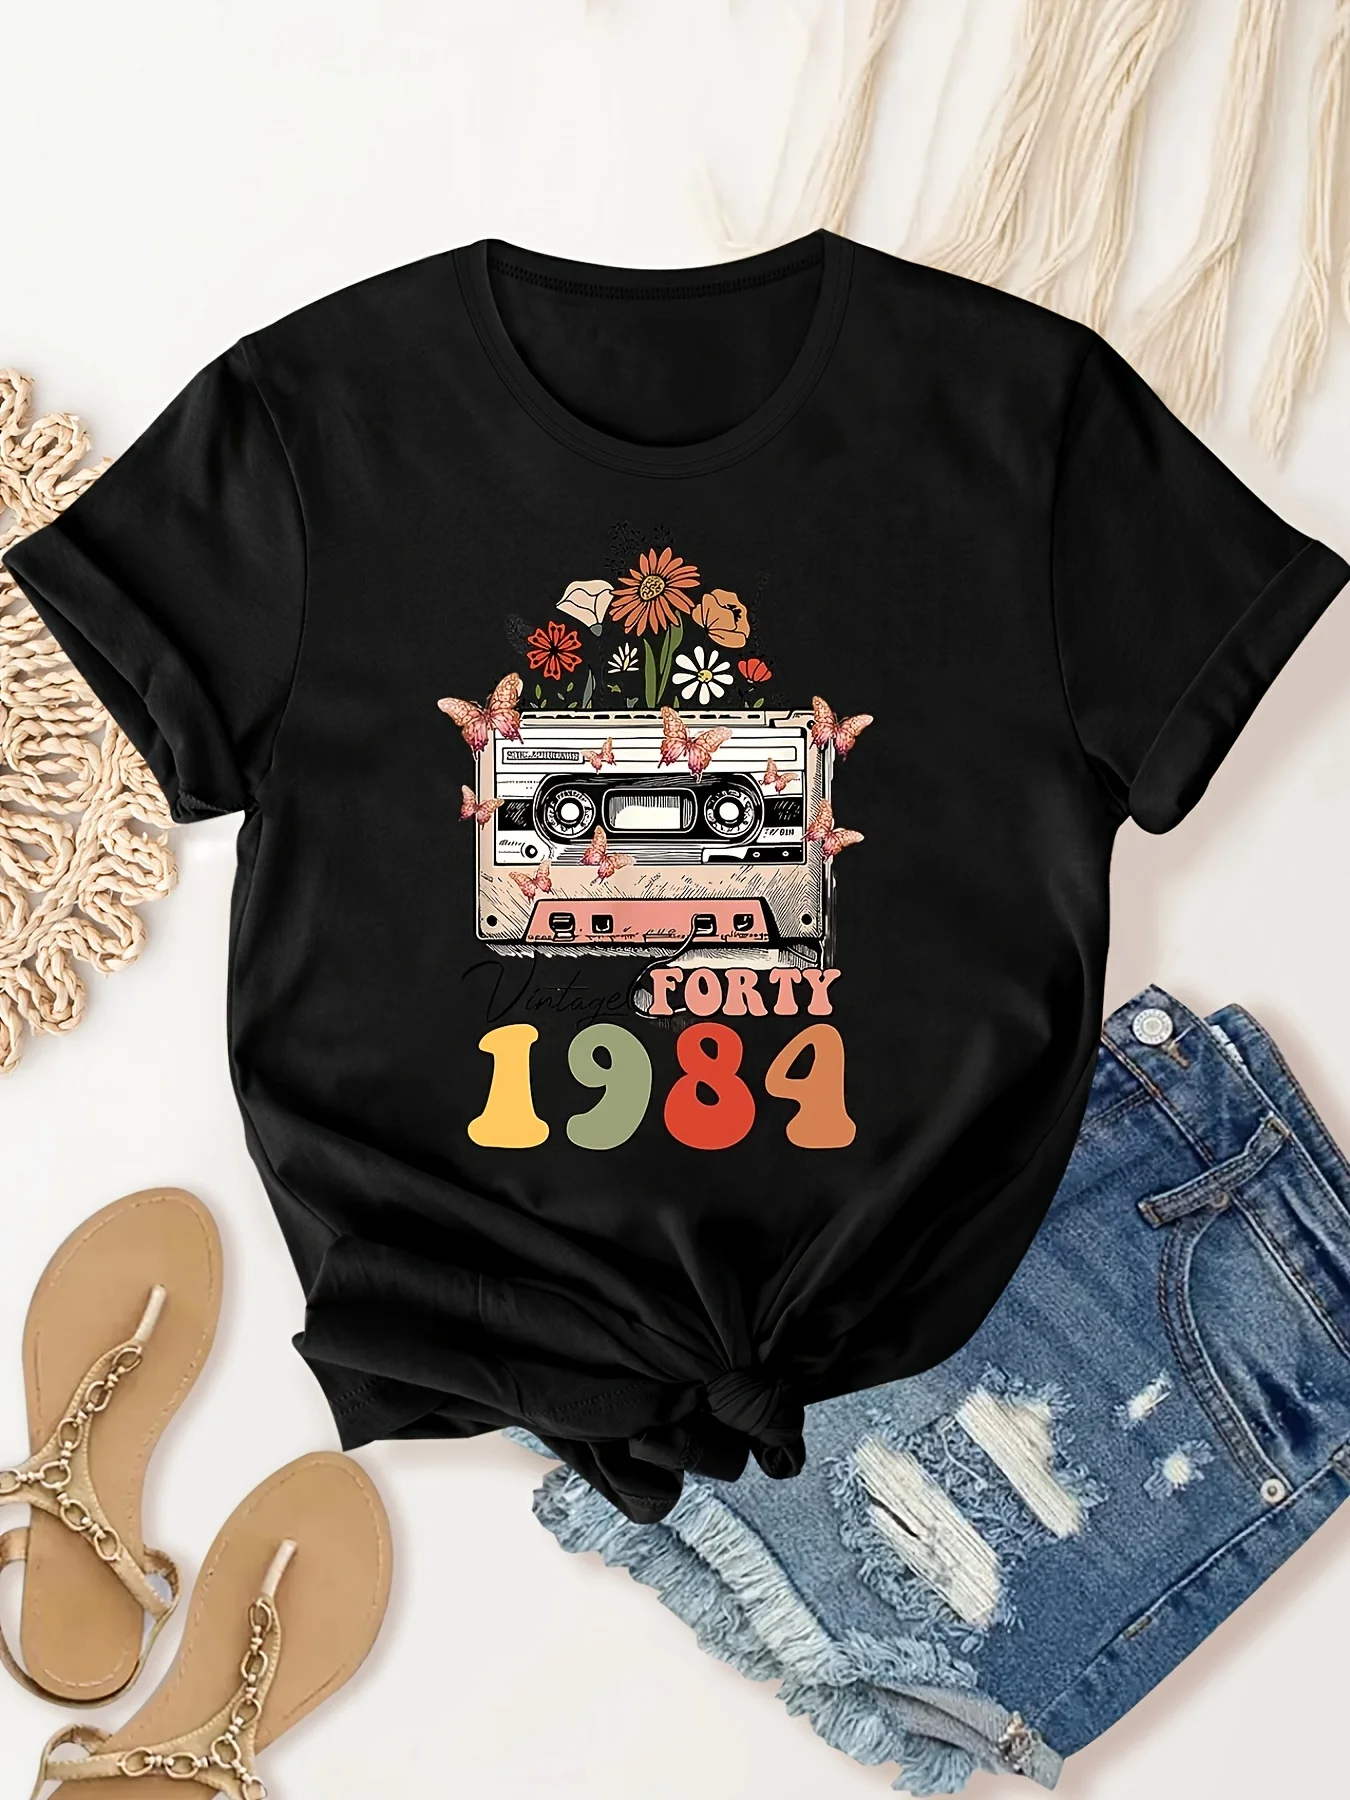 Женская Винтажная футболка с коротким рукавом и радиопринтом, лето 1984 футболка mingliusili женская оверсайз с коротким рукавом эстетичный рисунок винтажная модная рубашка в стиле y2k лето 2000